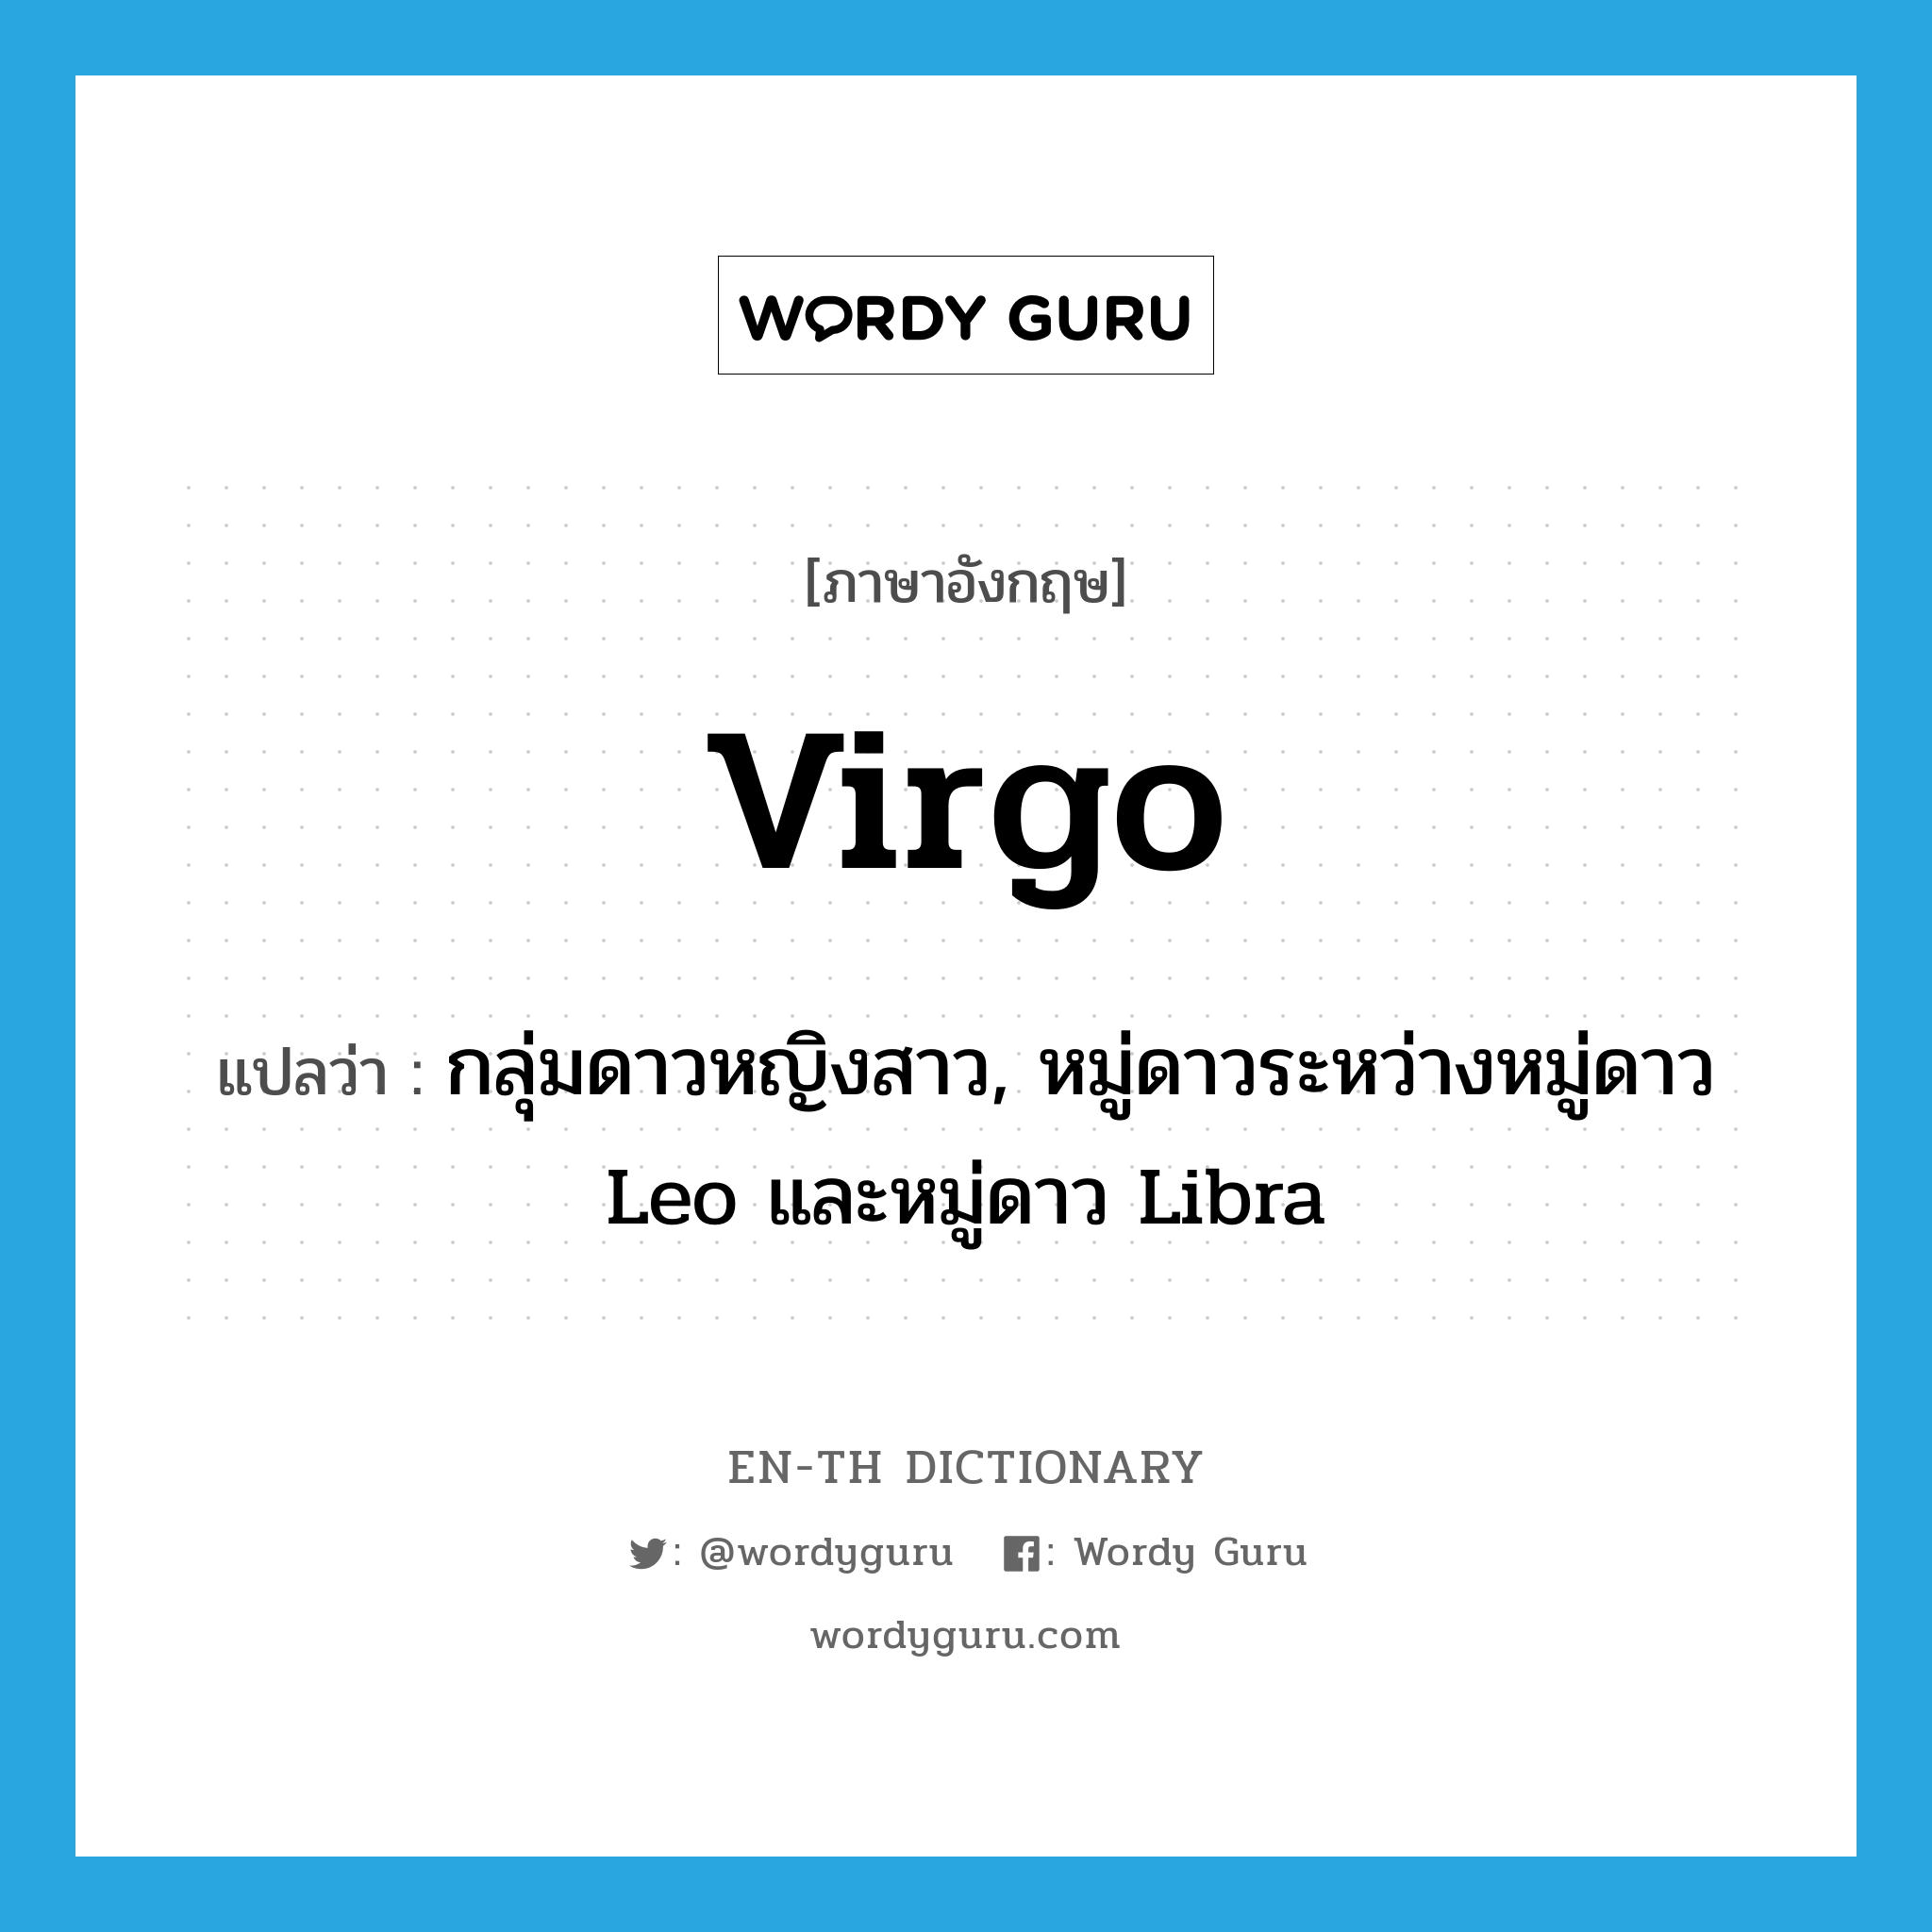 กลุ่มดาวหญิงสาว, หมู่ดาวระหว่างหมู่ดาว Leo และหมู่ดาว Libra ภาษาอังกฤษ?, คำศัพท์ภาษาอังกฤษ กลุ่มดาวหญิงสาว, หมู่ดาวระหว่างหมู่ดาว Leo และหมู่ดาว Libra แปลว่า Virgo ประเภท N หมวด N